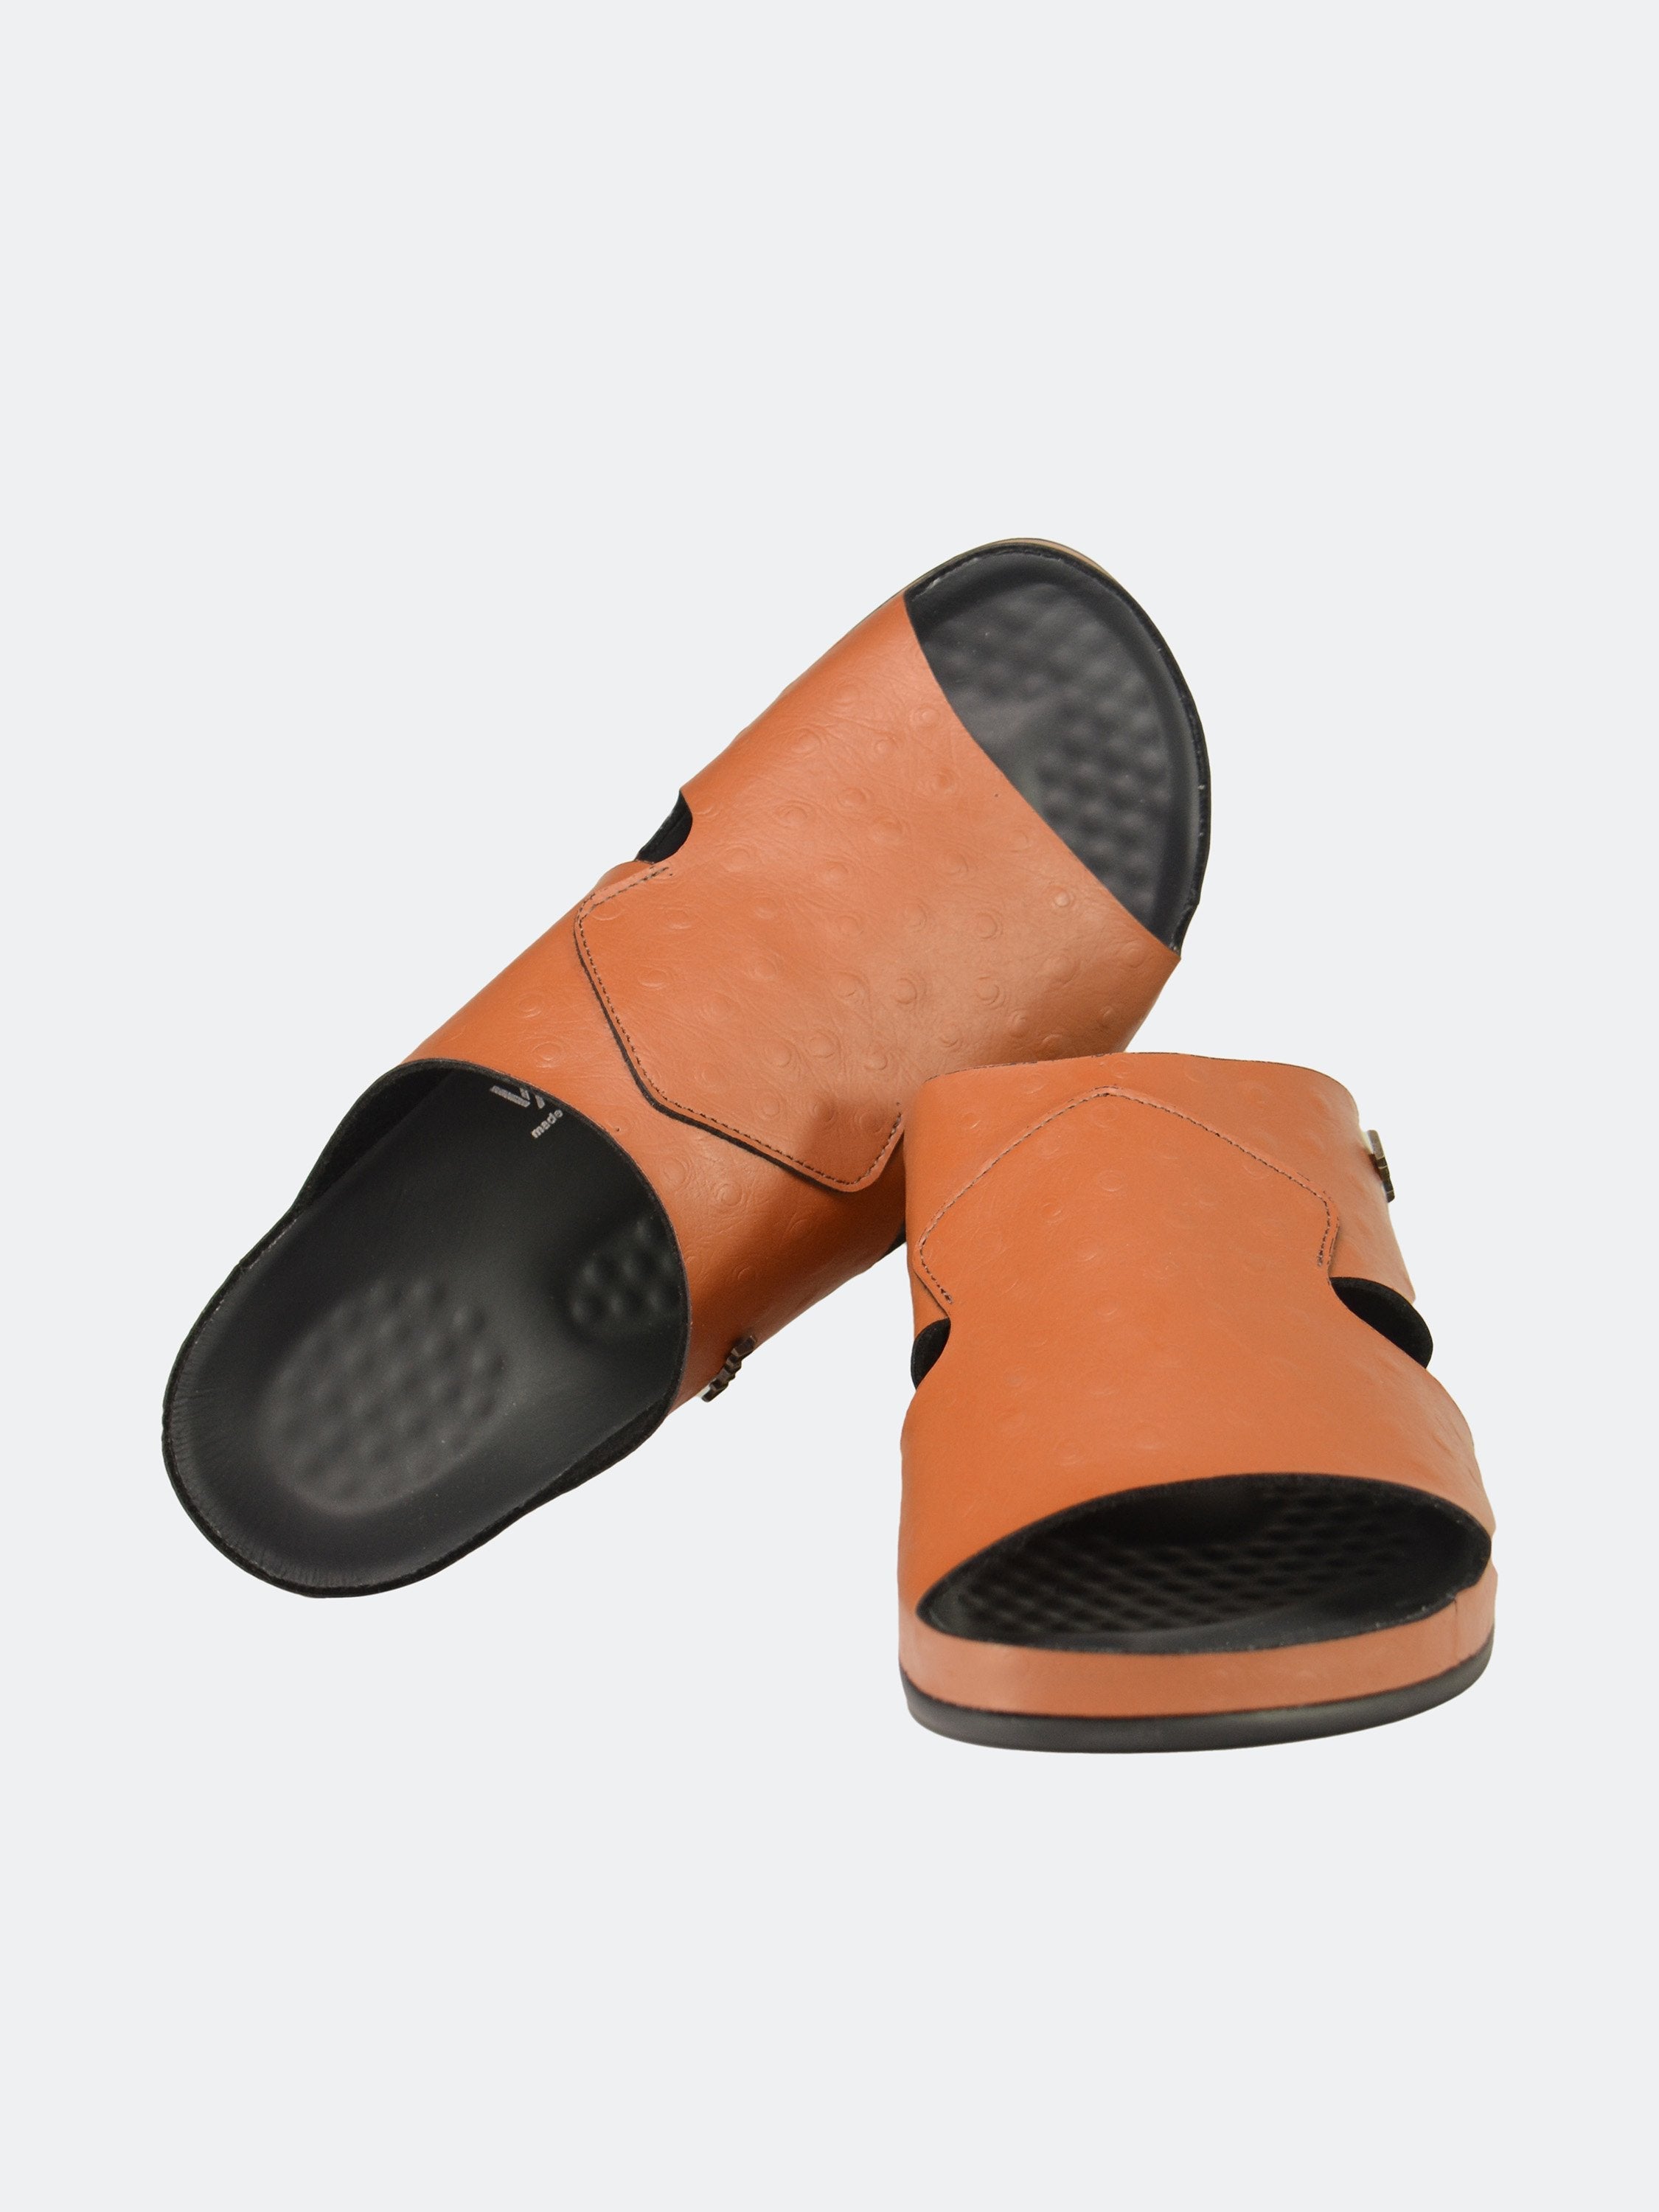 Vital Men's Slider Sandals #color_Brown